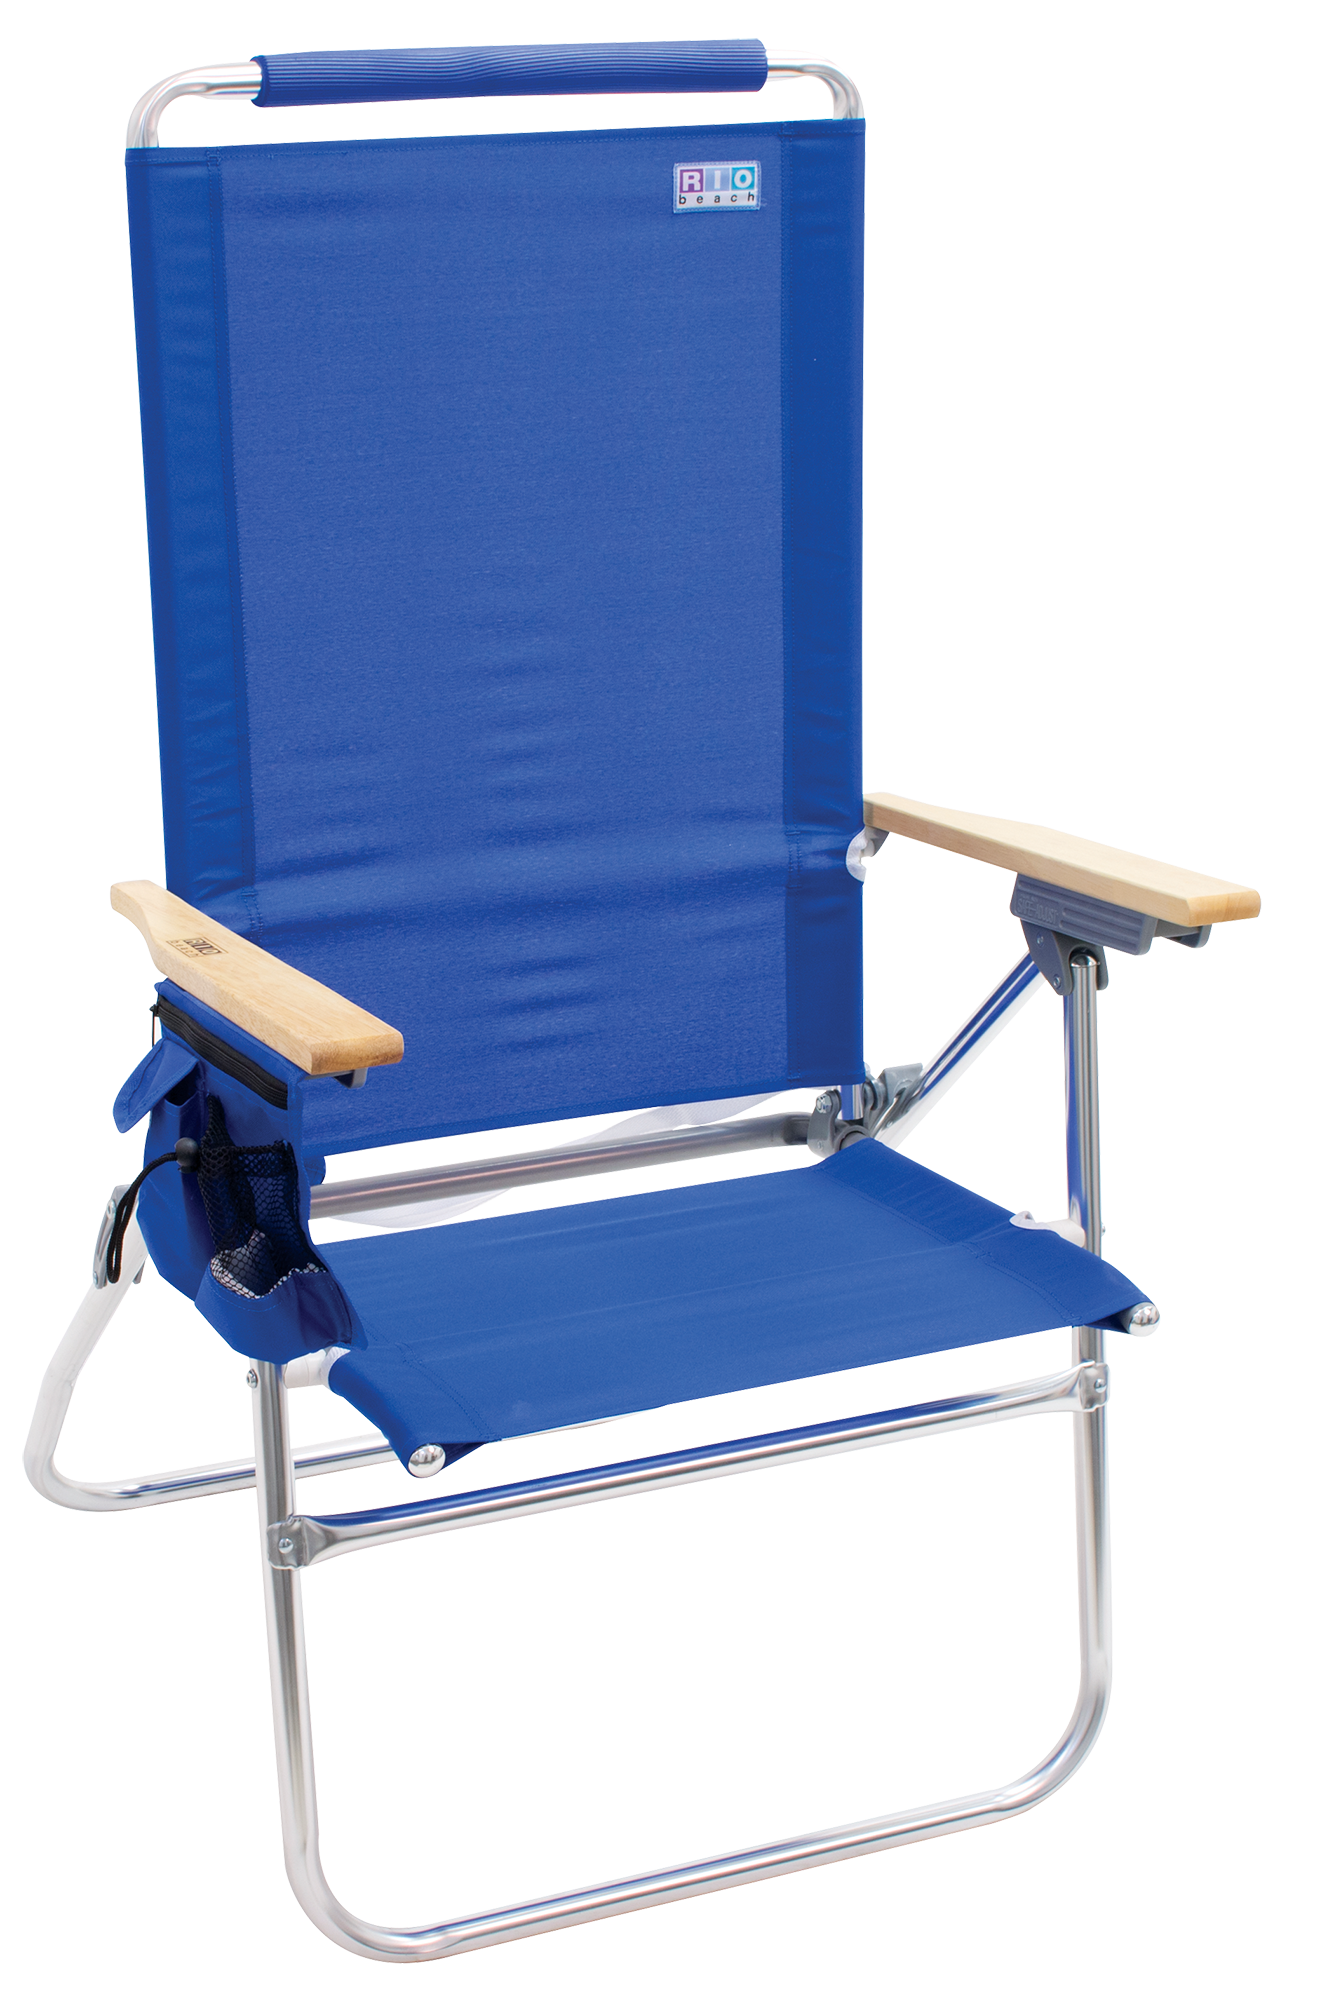 RIO Beach Hi-Boy Aluminum Beach Chair, Blue, Adjustable Lounge Chair - image 1 of 3